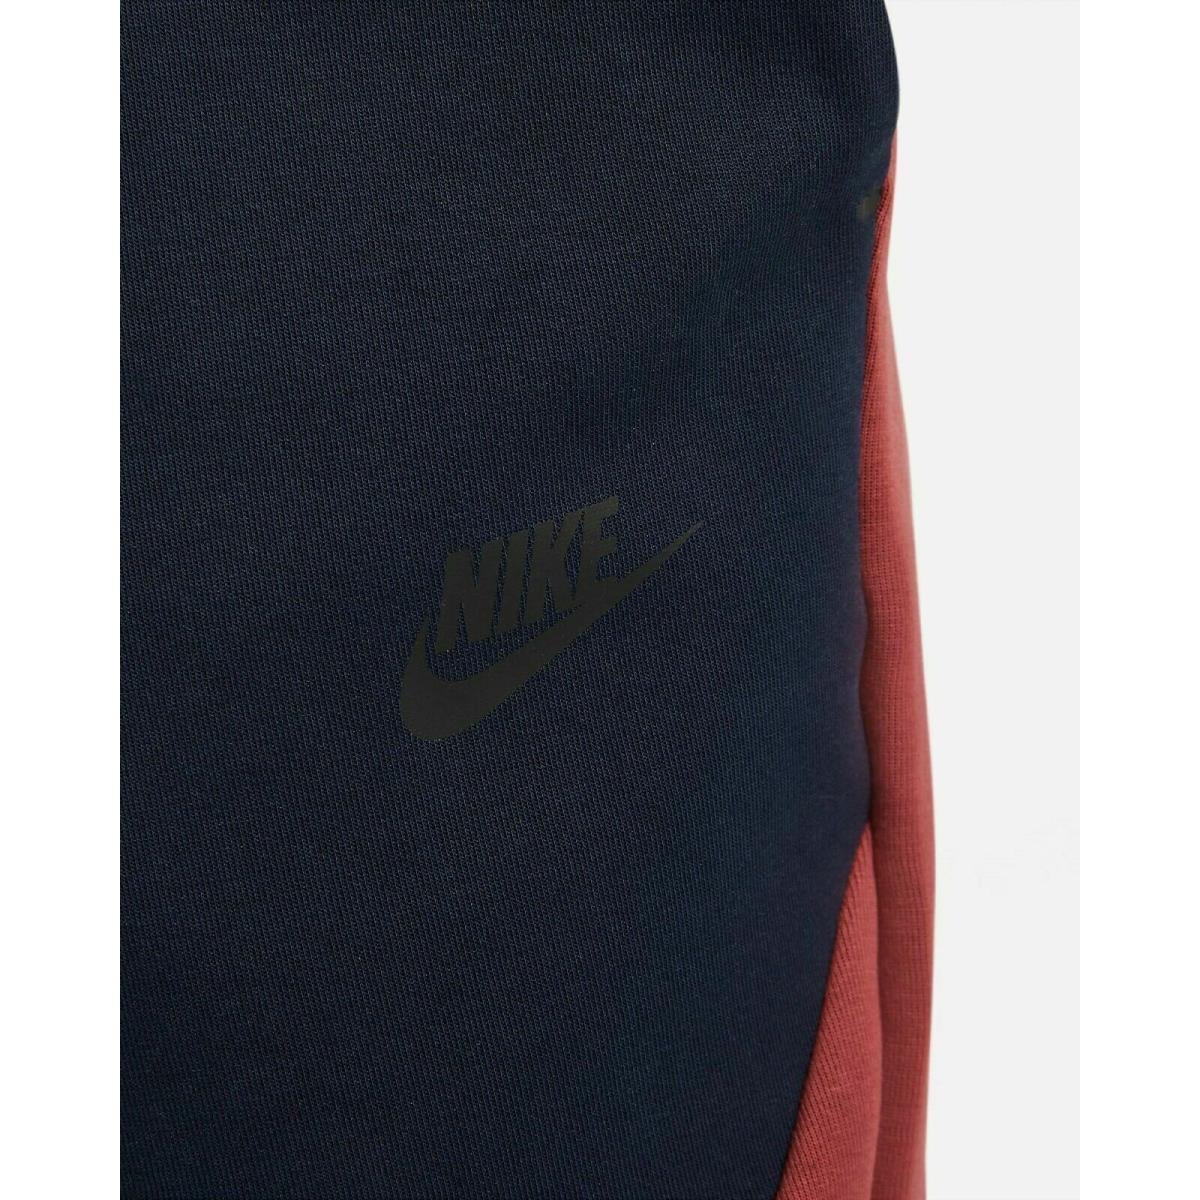 Nike clothing Sportswear Tech - Multicolor 3